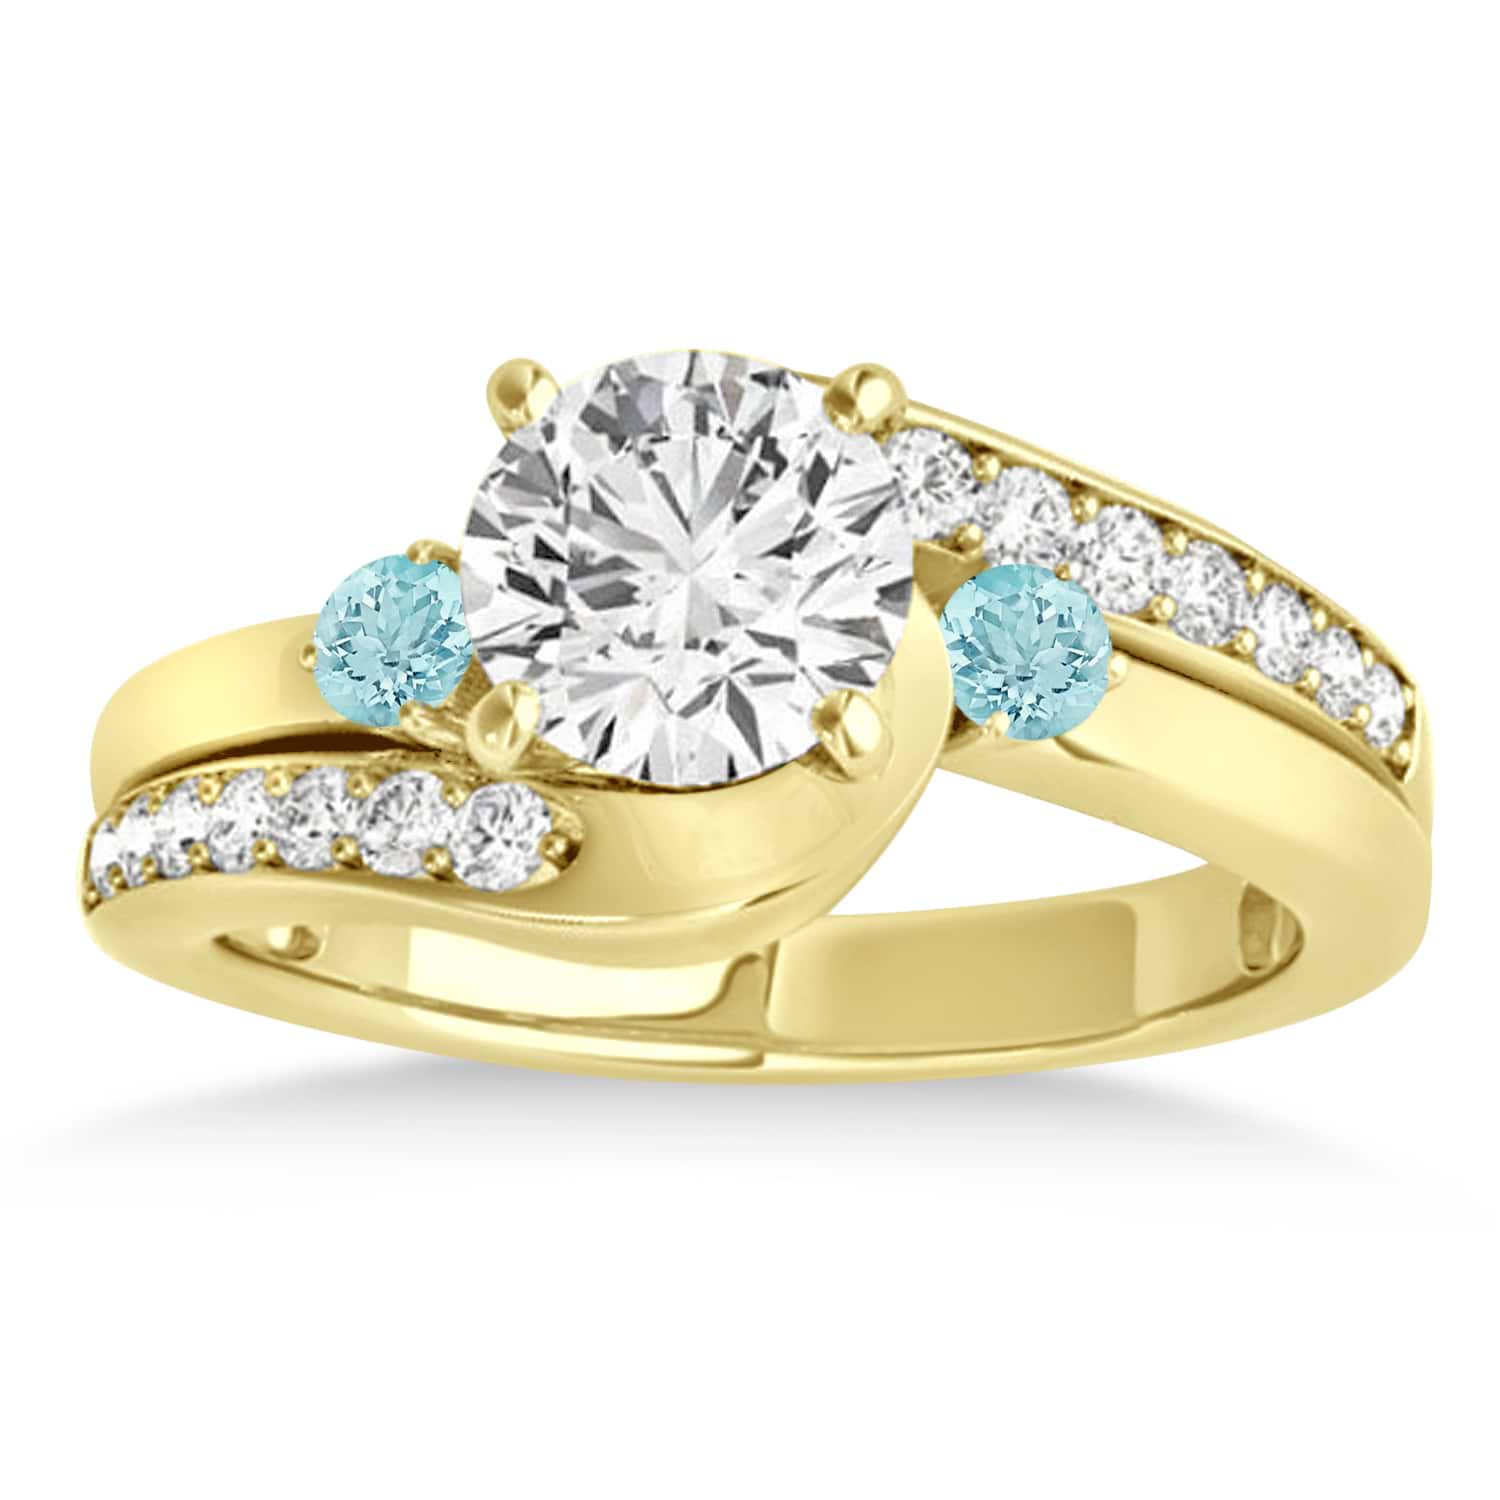 Swirl Design Aquamarine & Diamond Engagement Ring Setting 18k Yellow Gold 0.38ct